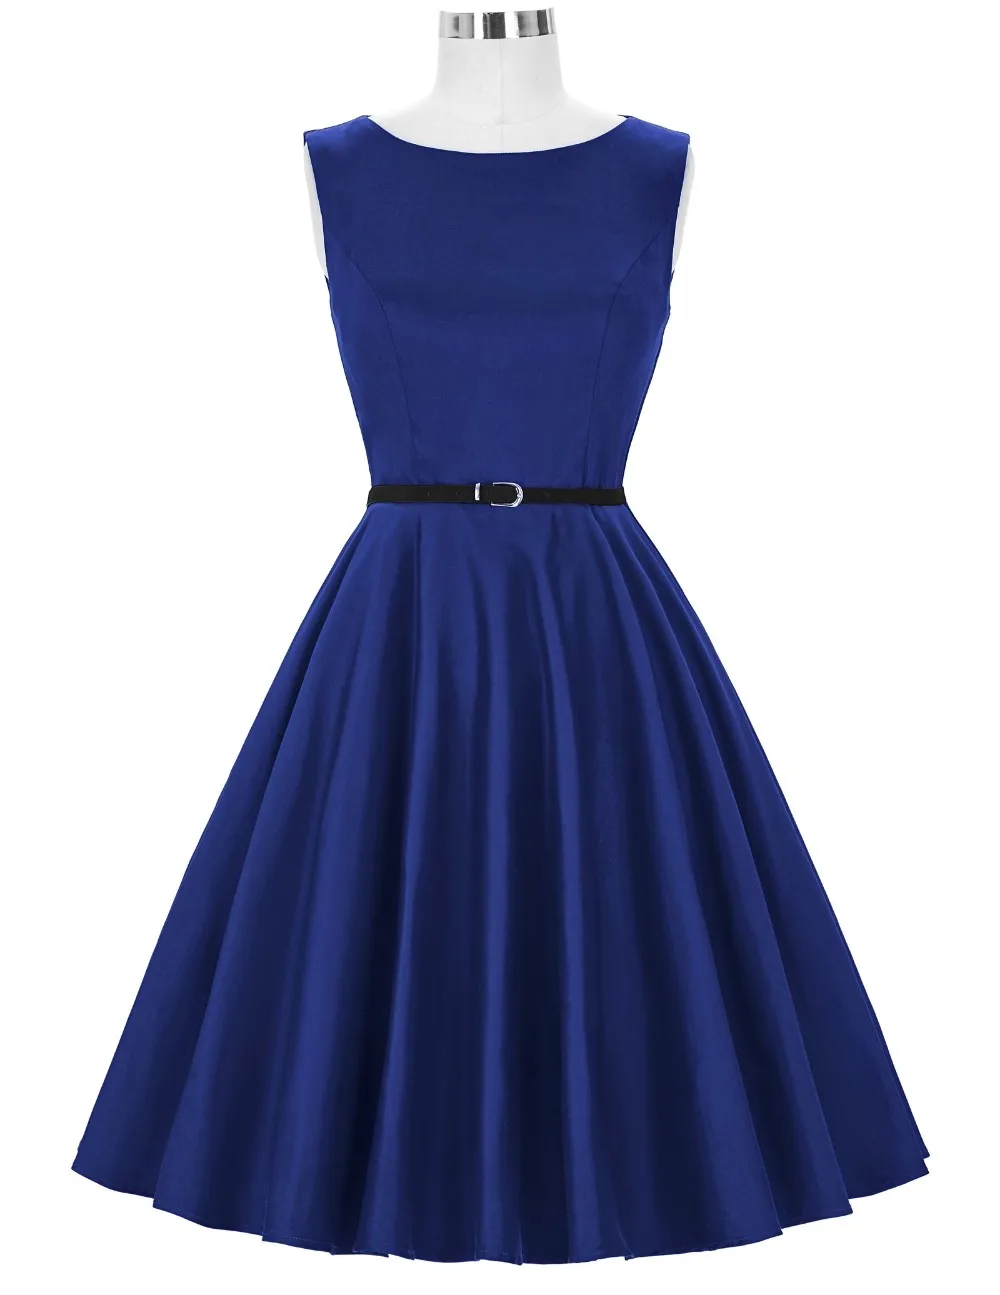 royal blue cotton dress